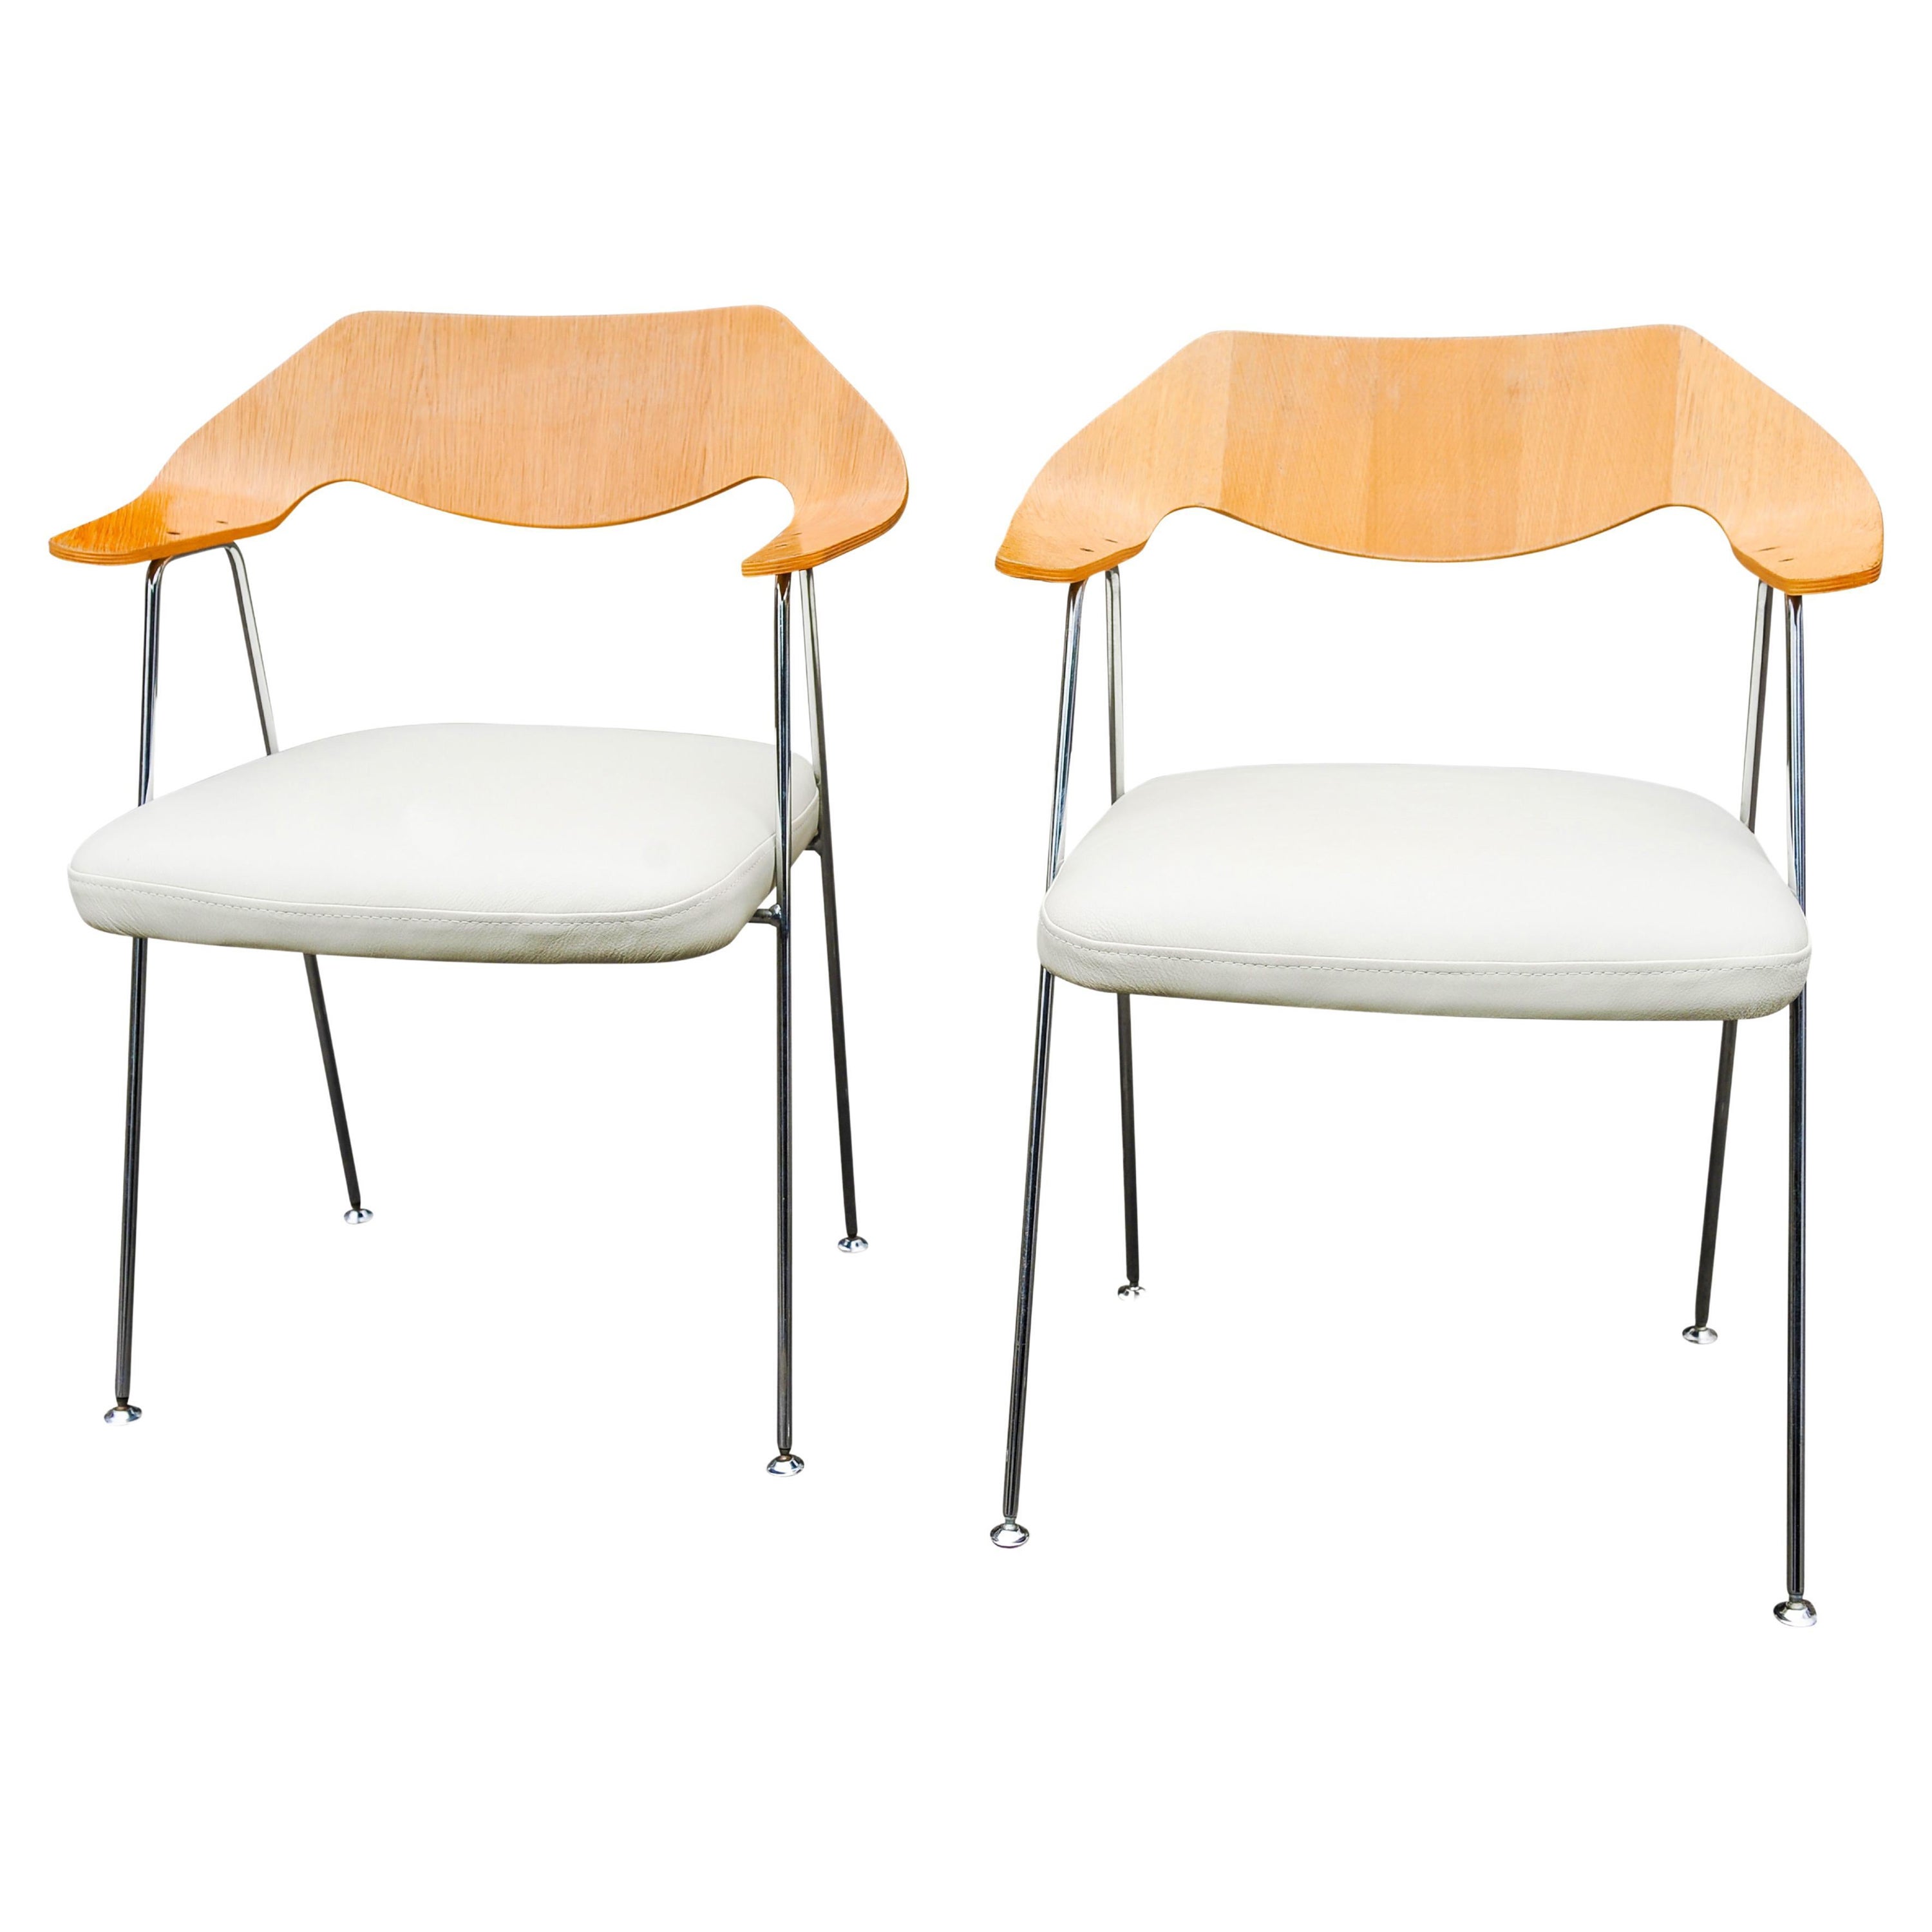 Paar Hille von britischen Designer Robin Day Modell 675 gebogene Eiche Sperrholz & Chrom Sessel mit weißem Leder Sitze 1960er Jahre Made in England

675 Stühle wurden 1952 von Robin Day für die Marke Hille in Großbritannien entworfen. Verchromtes